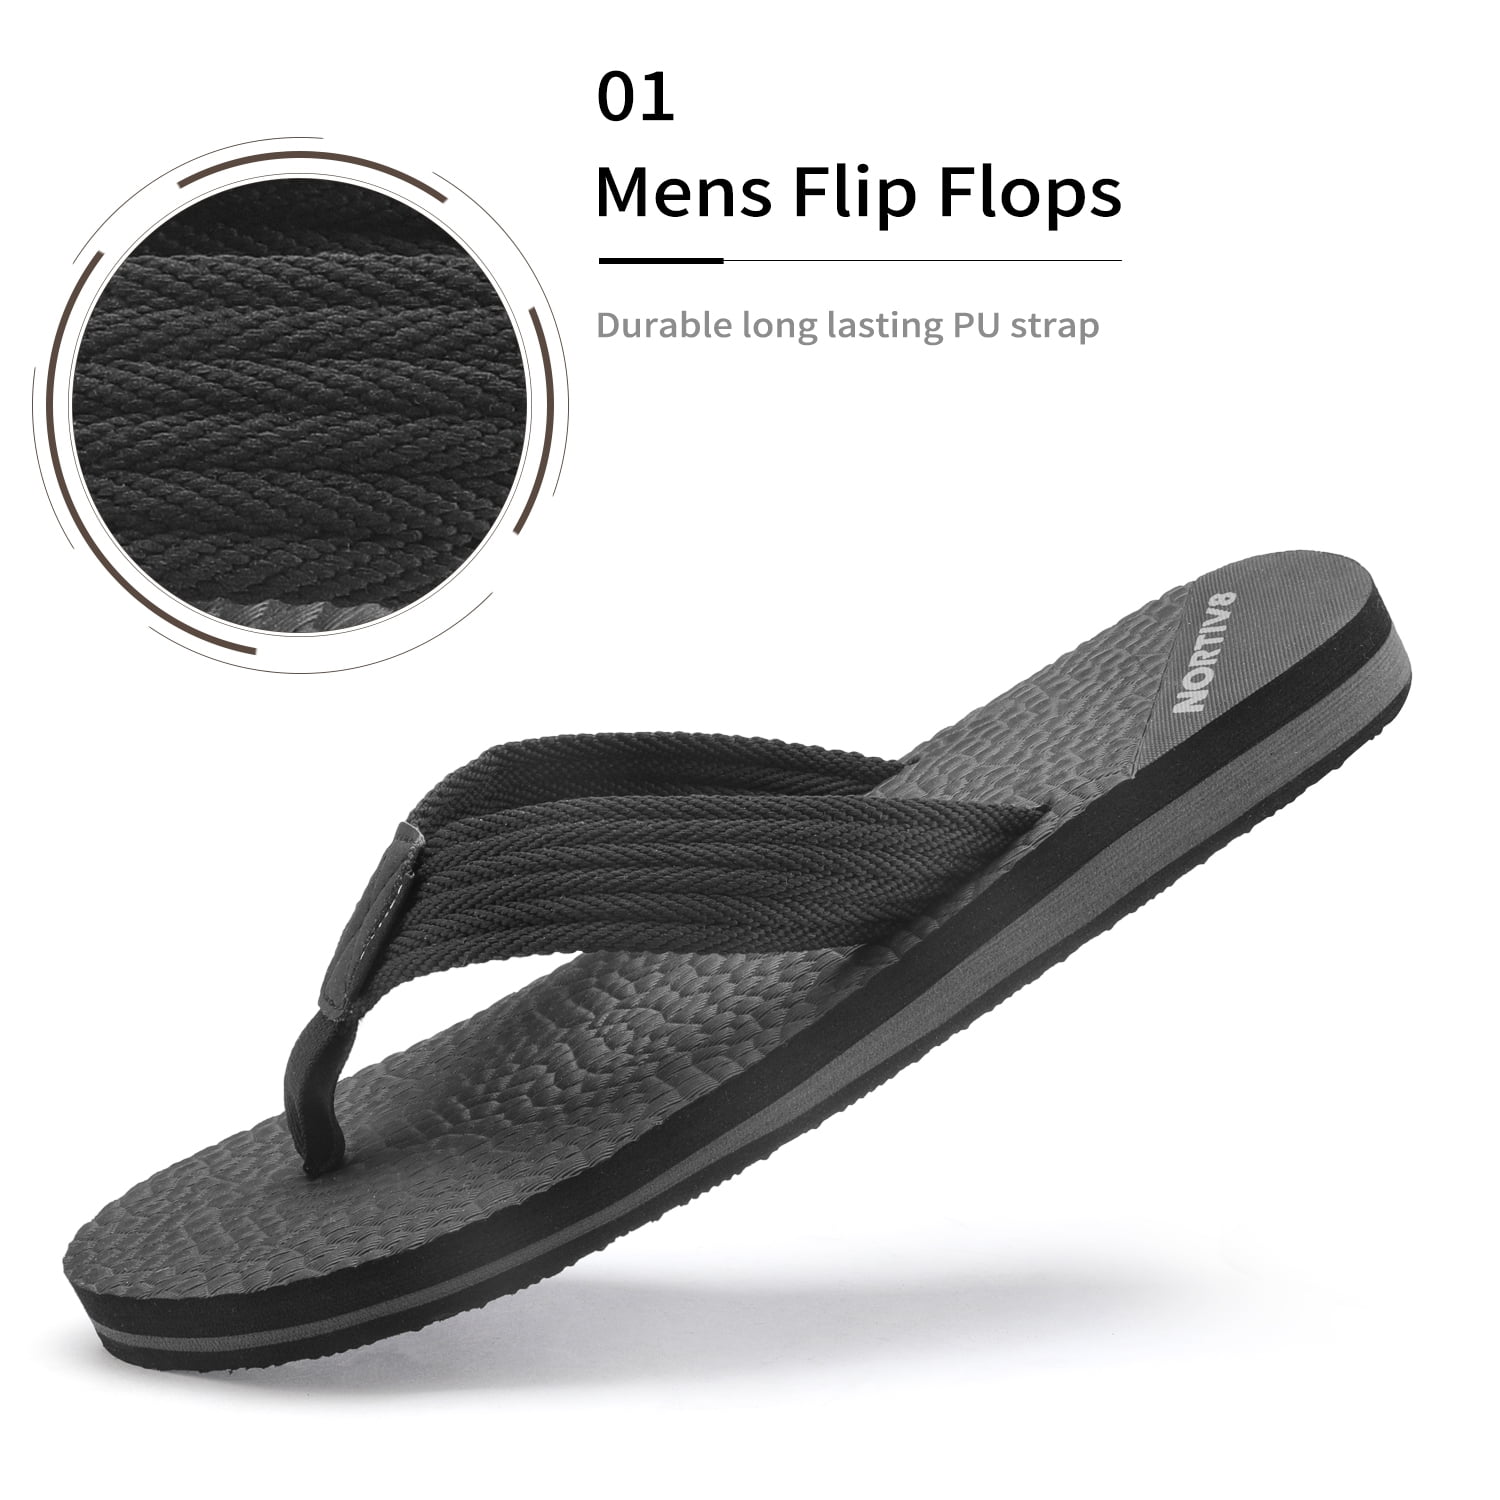 mens flip flops size 7